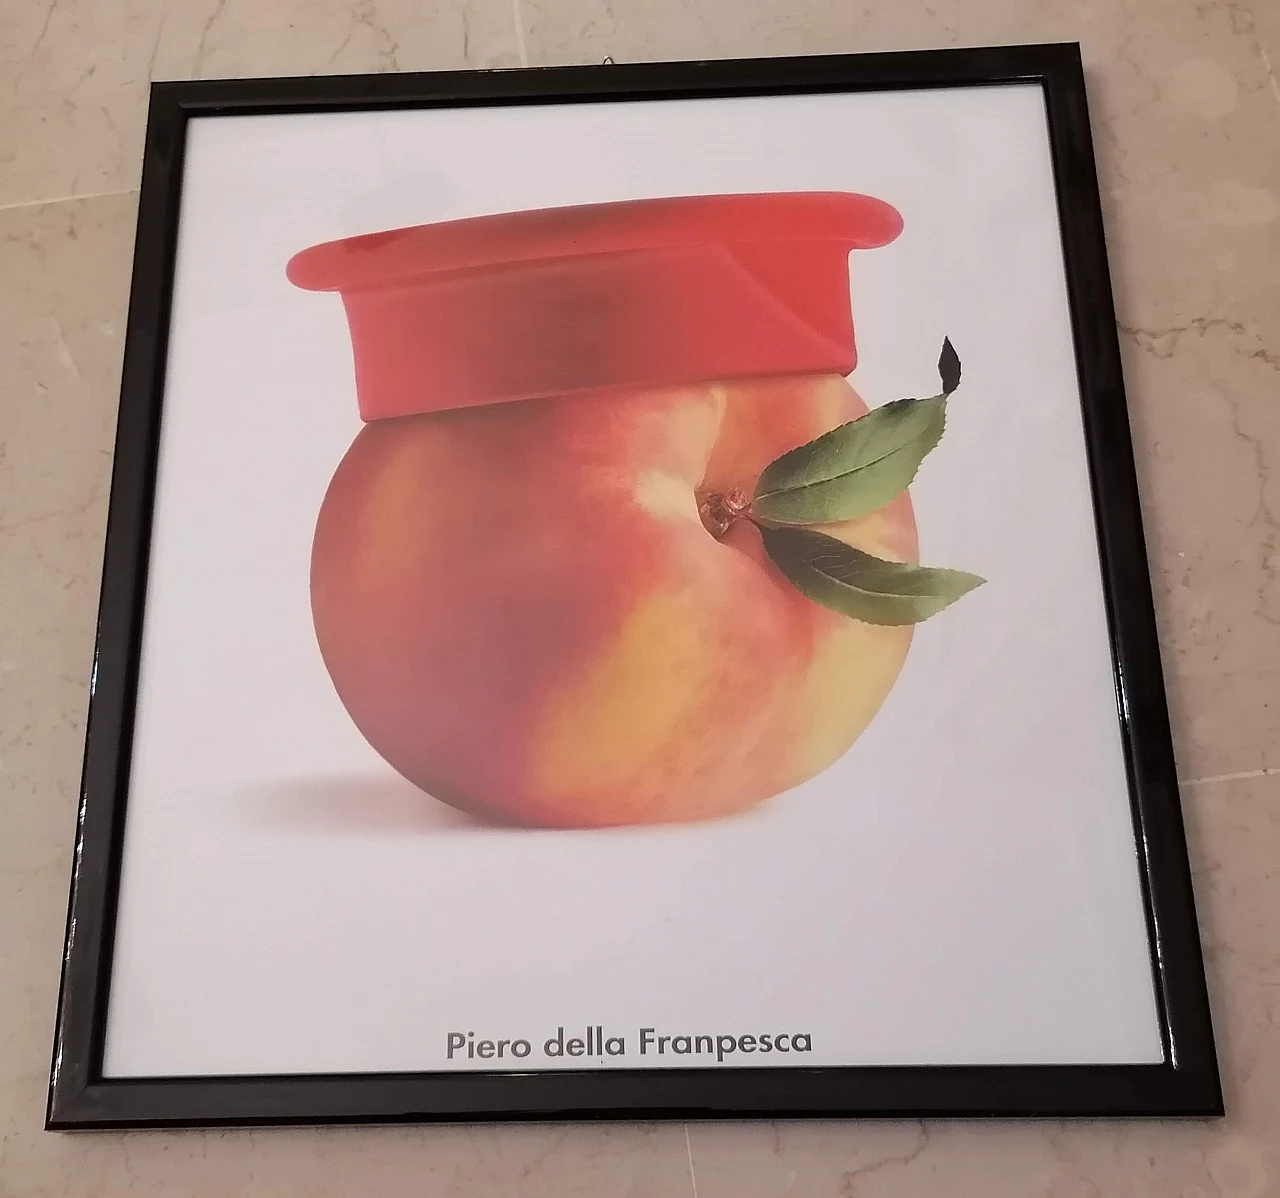 Armando Testa, Piero della Franpesca, advertising poster for Esselunga, 1990s 1450425